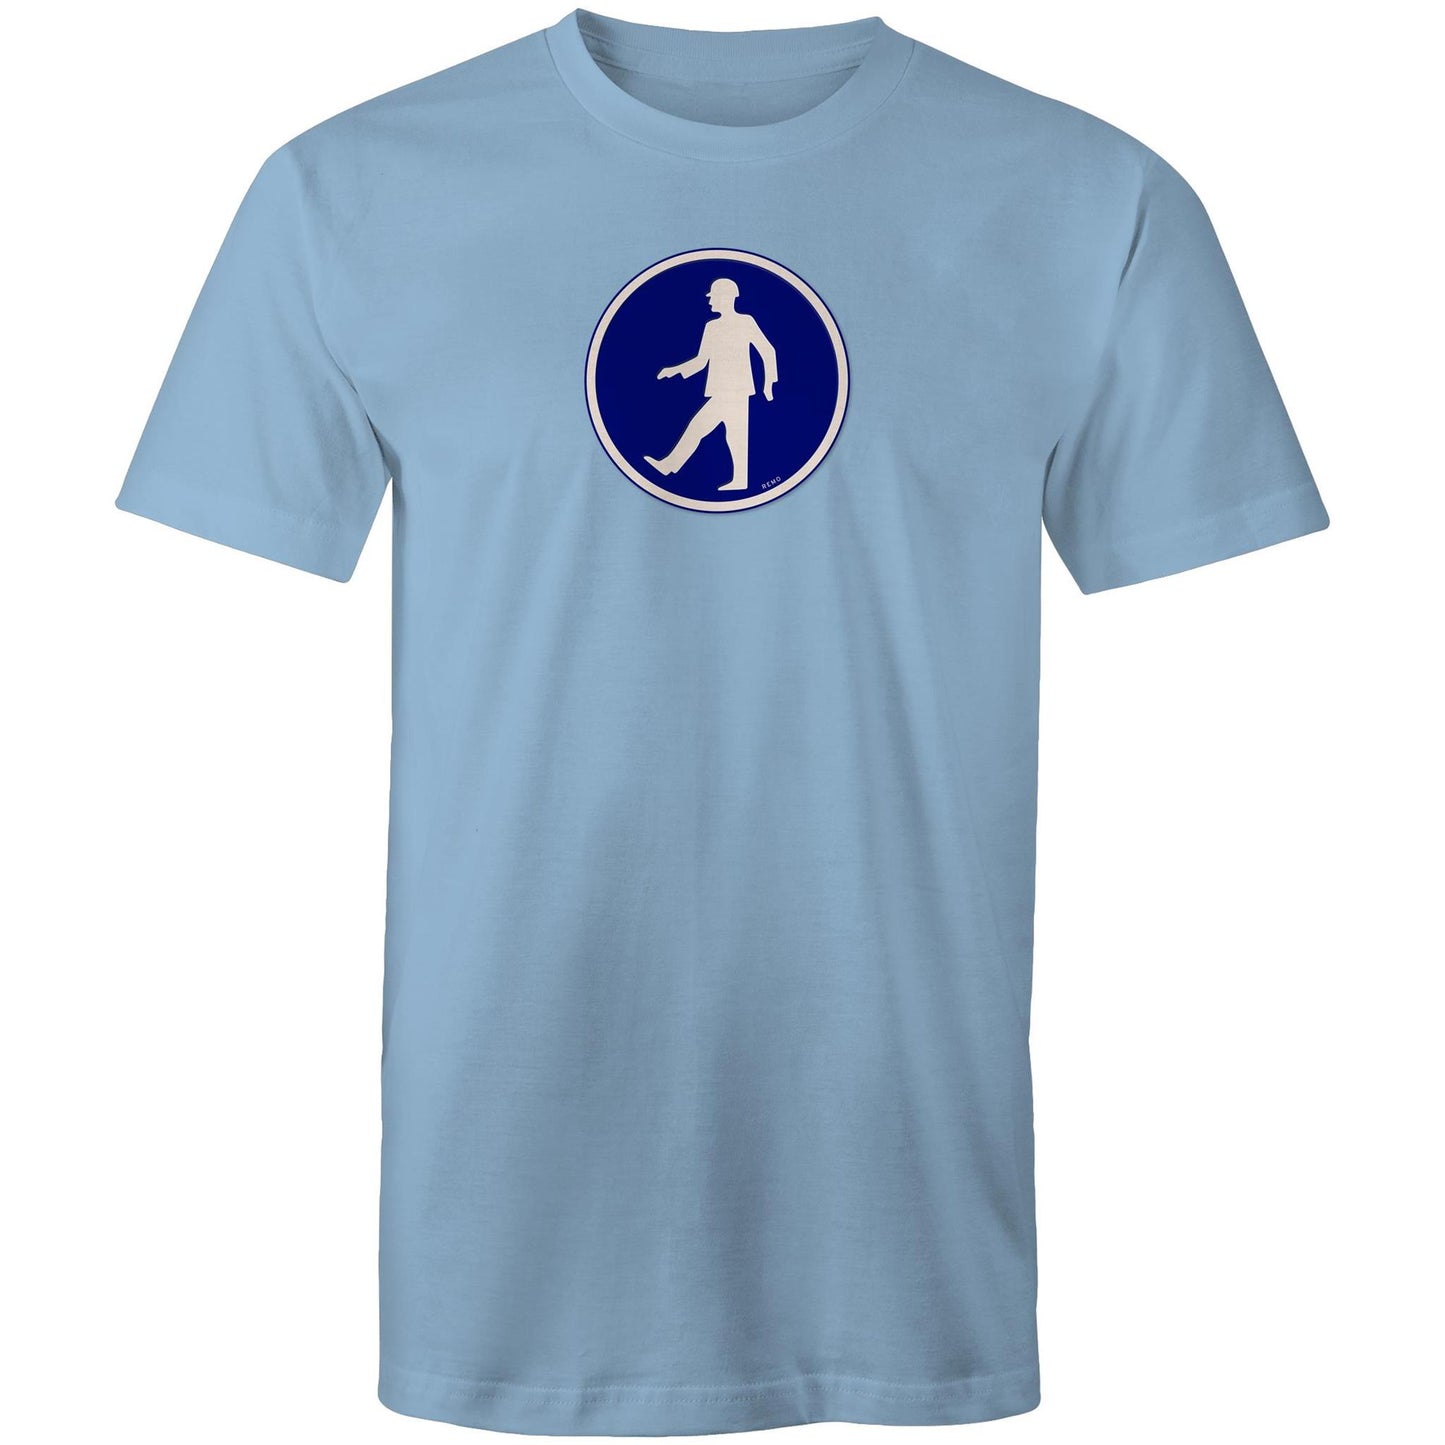 Walking Man T Shirts for Men (Unisex)